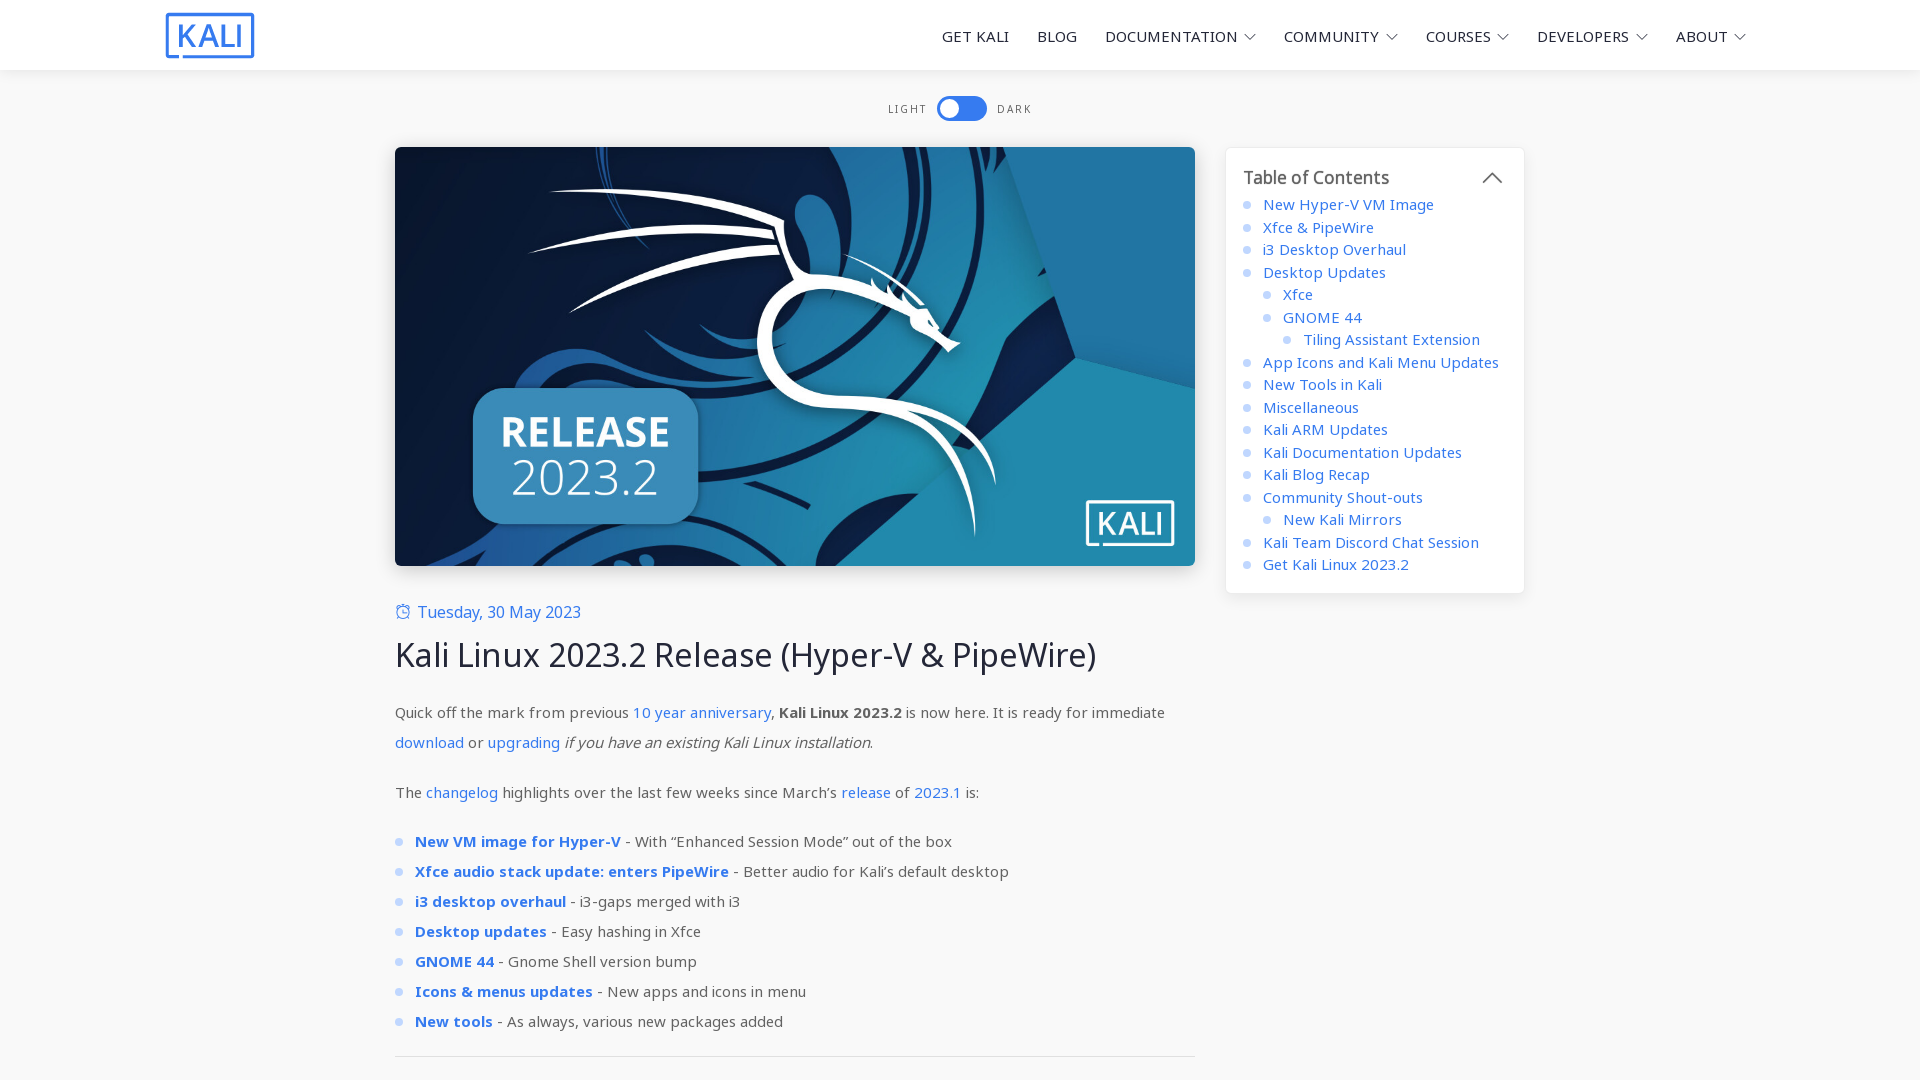 Kali Linux 2023.2 Release (Hyper-V & PipeWire) | Kali Linux Blog